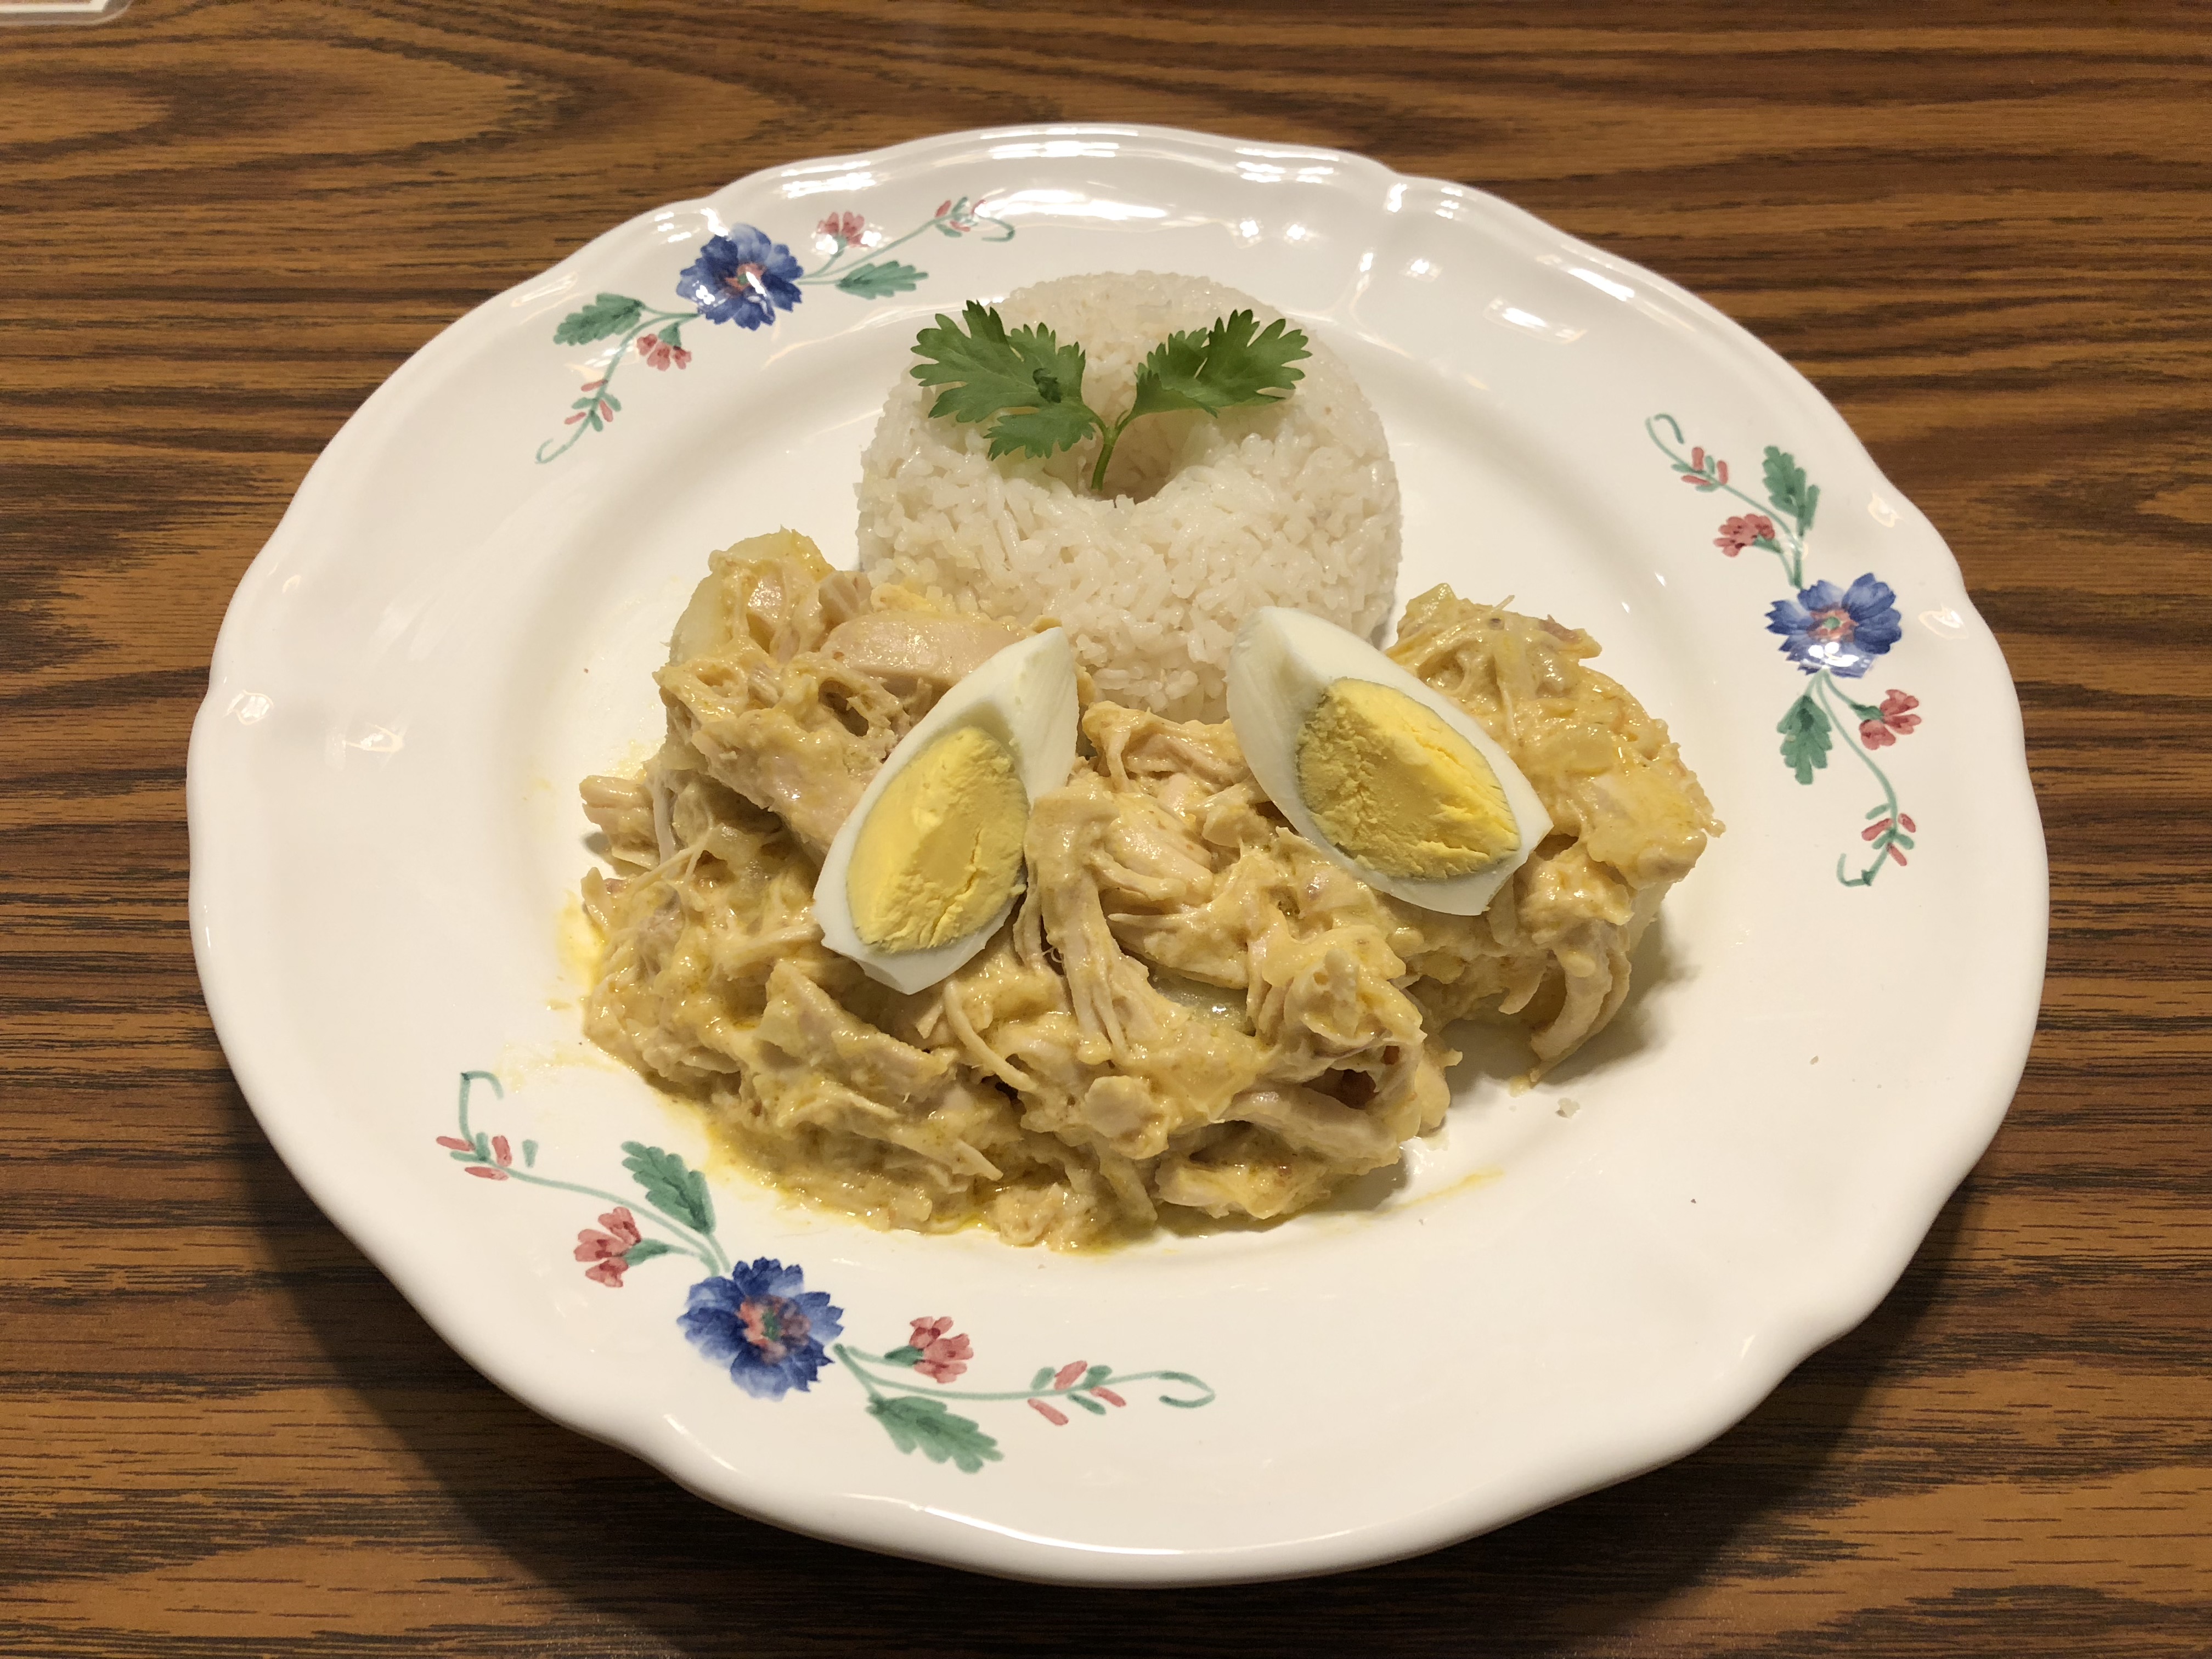 Aji de Gallina – Peruvian Spicy Chicken Stew